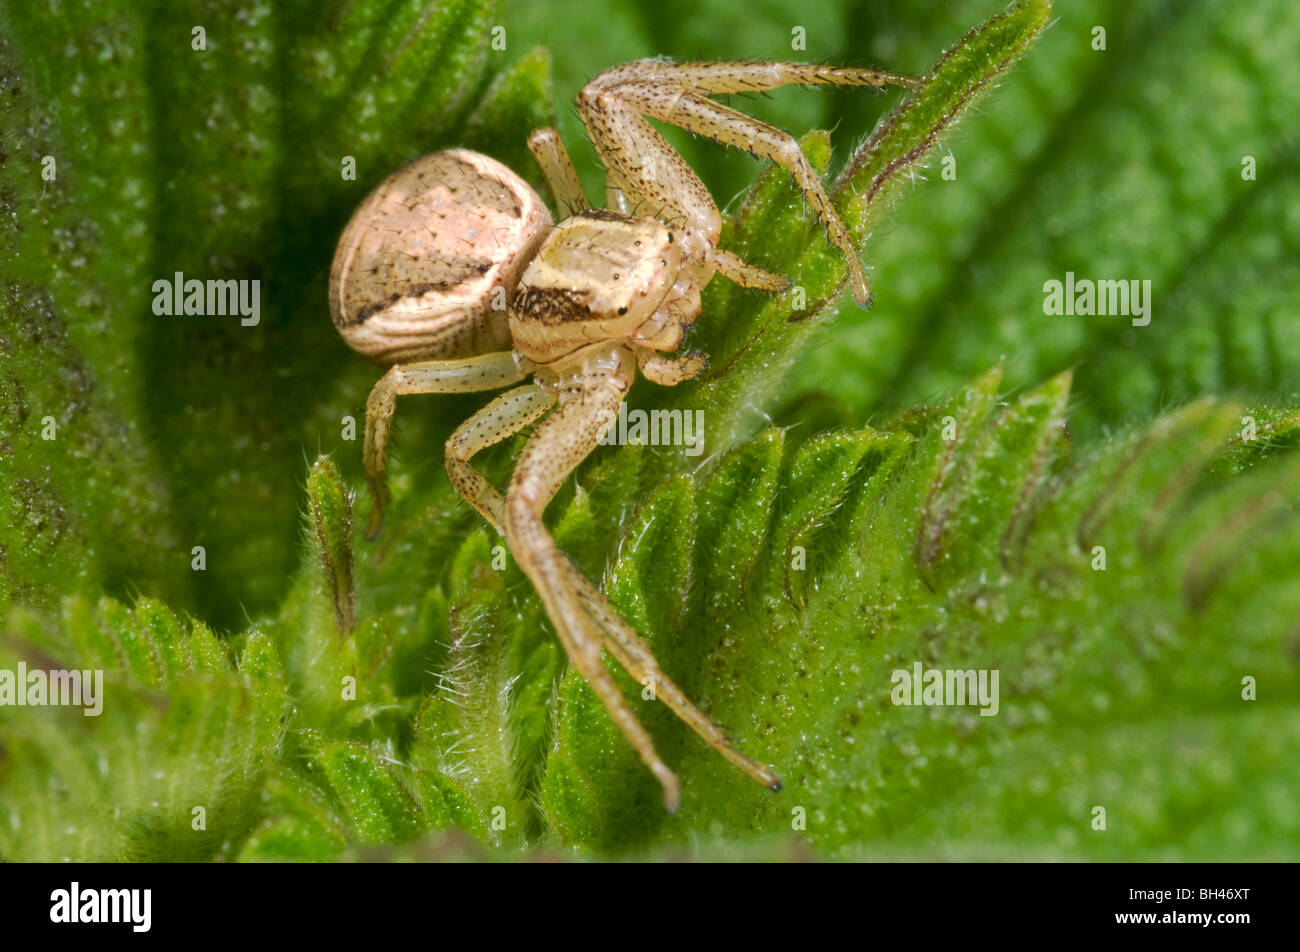 Common crab spider ( Xysticus cristatus). In threatening pose. Stock Photo